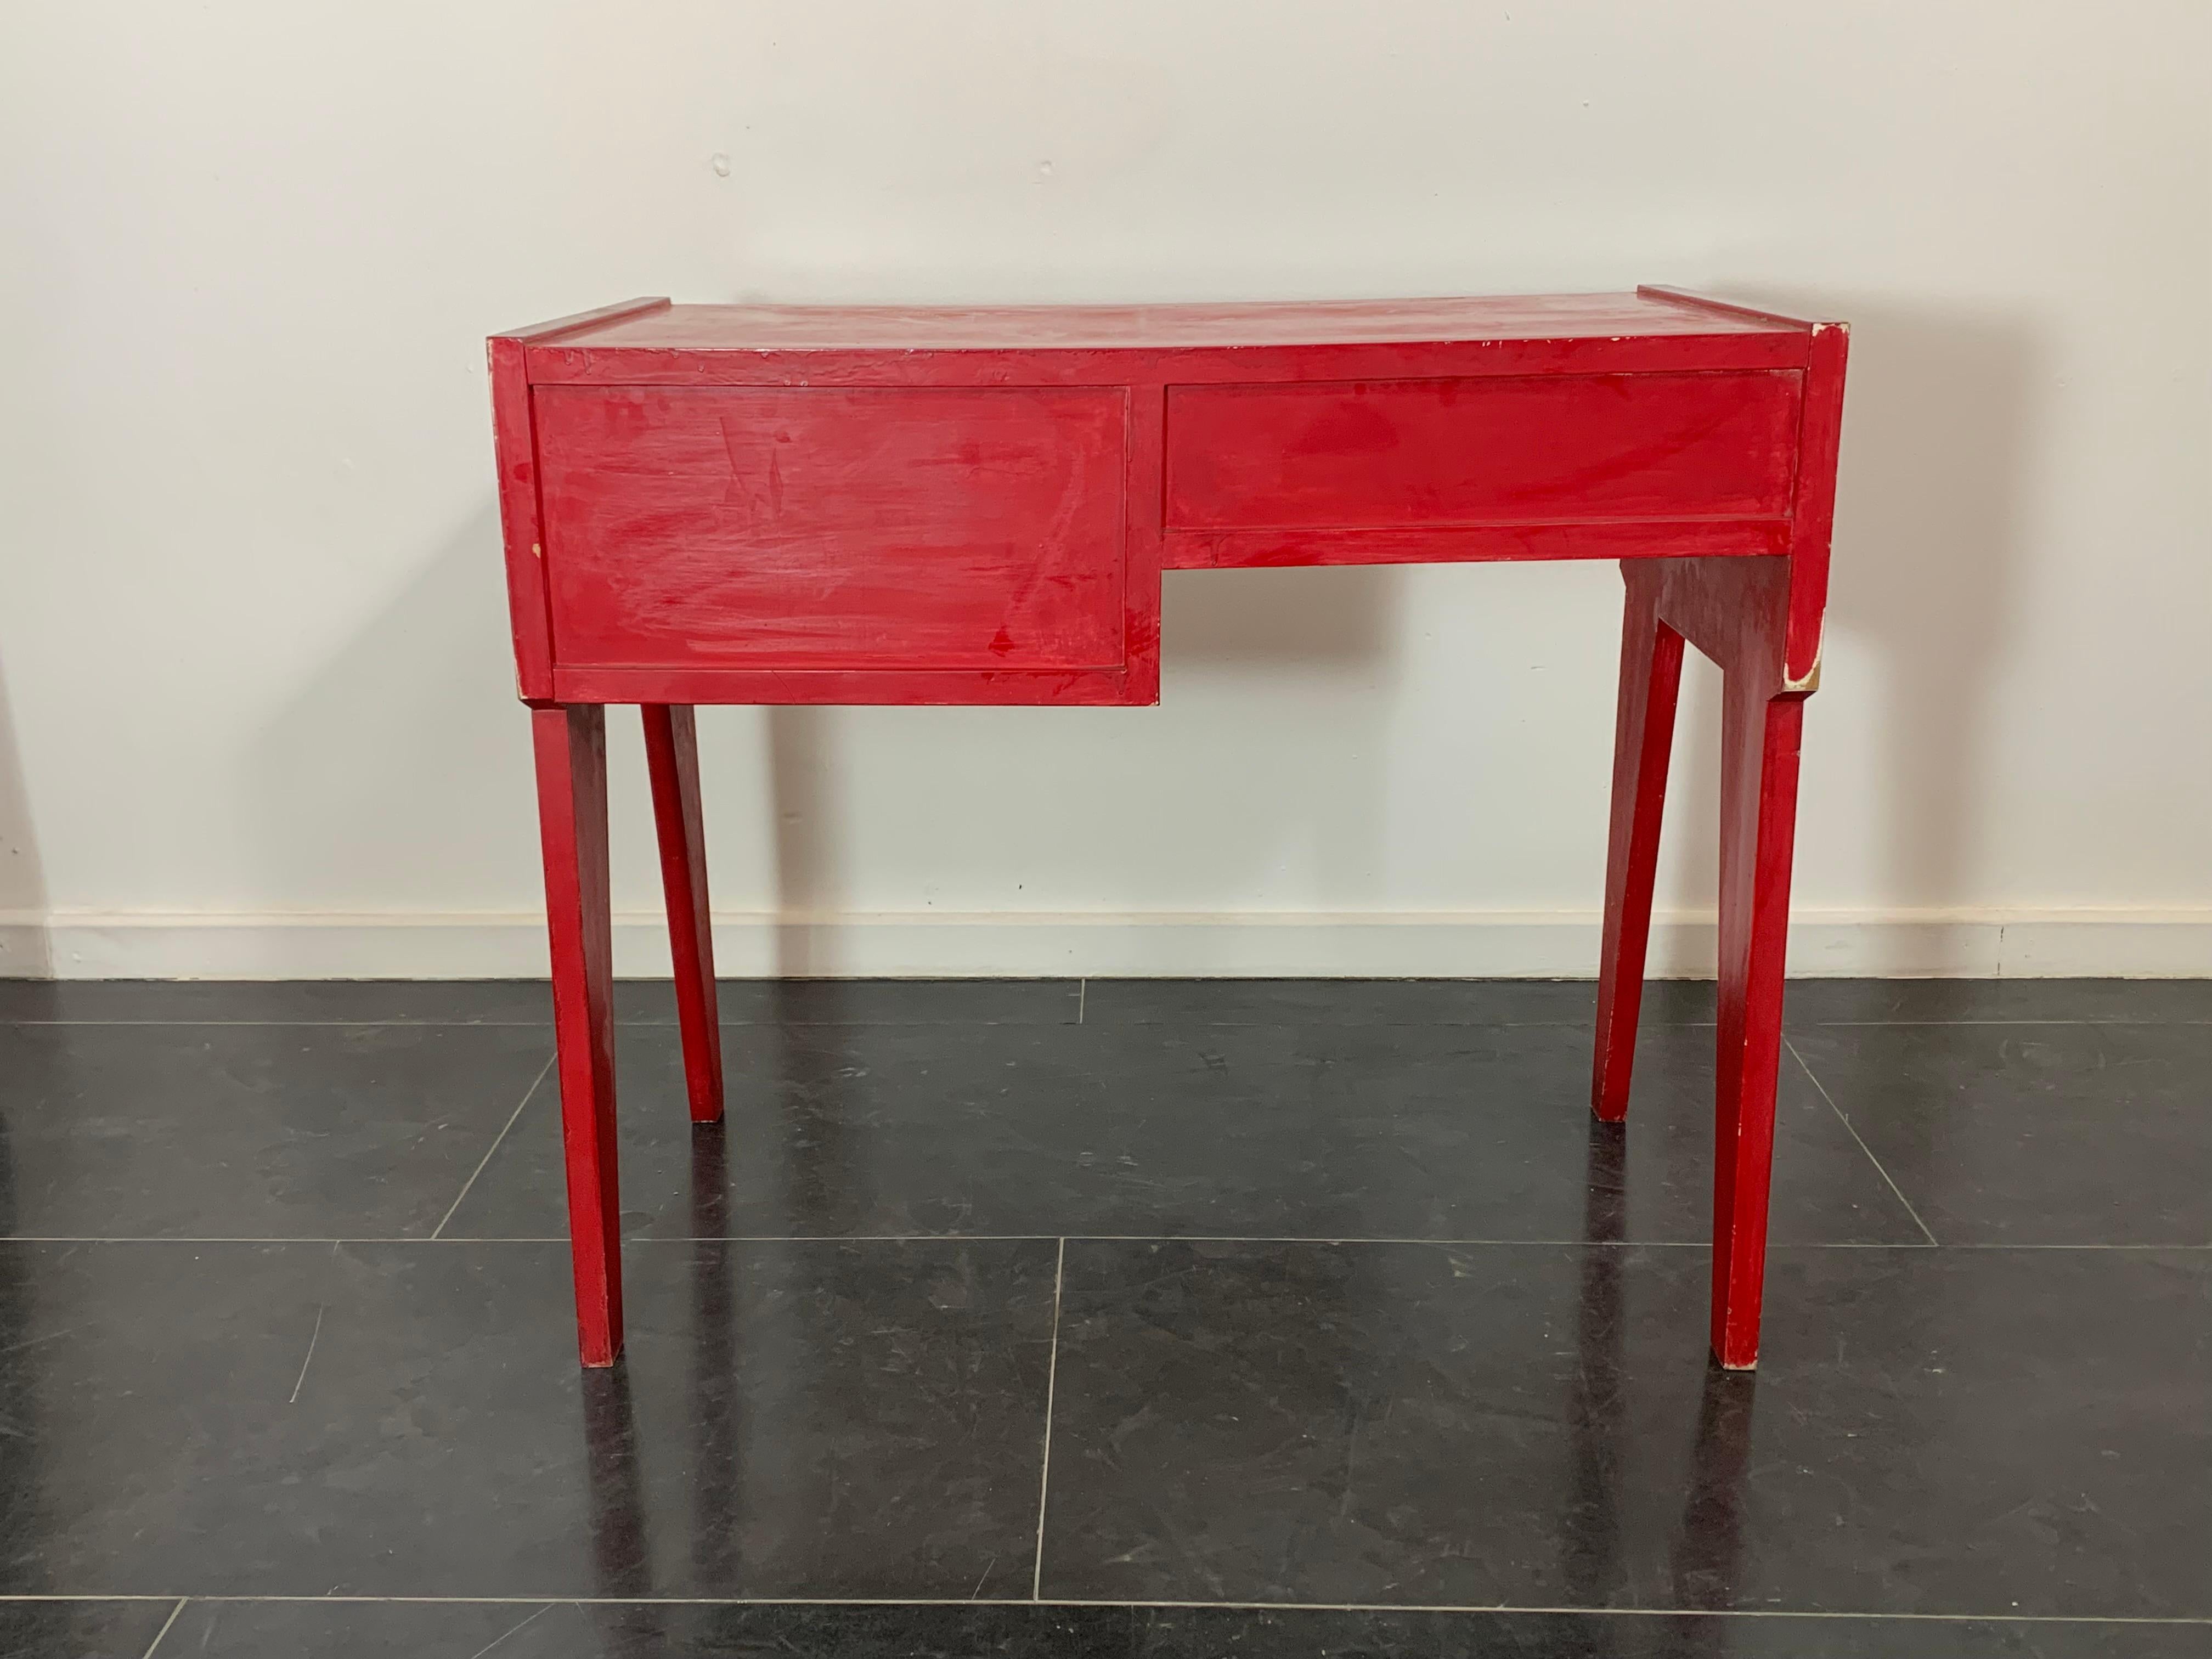 Bureau laqué rouge sur préparation de colle et de plâtre, années 1950. Equipé d'un tiroir et d'un compartiment ouvert. Retouchée et repeinte ultérieurement. Il présente une patine due à l'âge et à l'utilisation, aux retouches et à la peinture